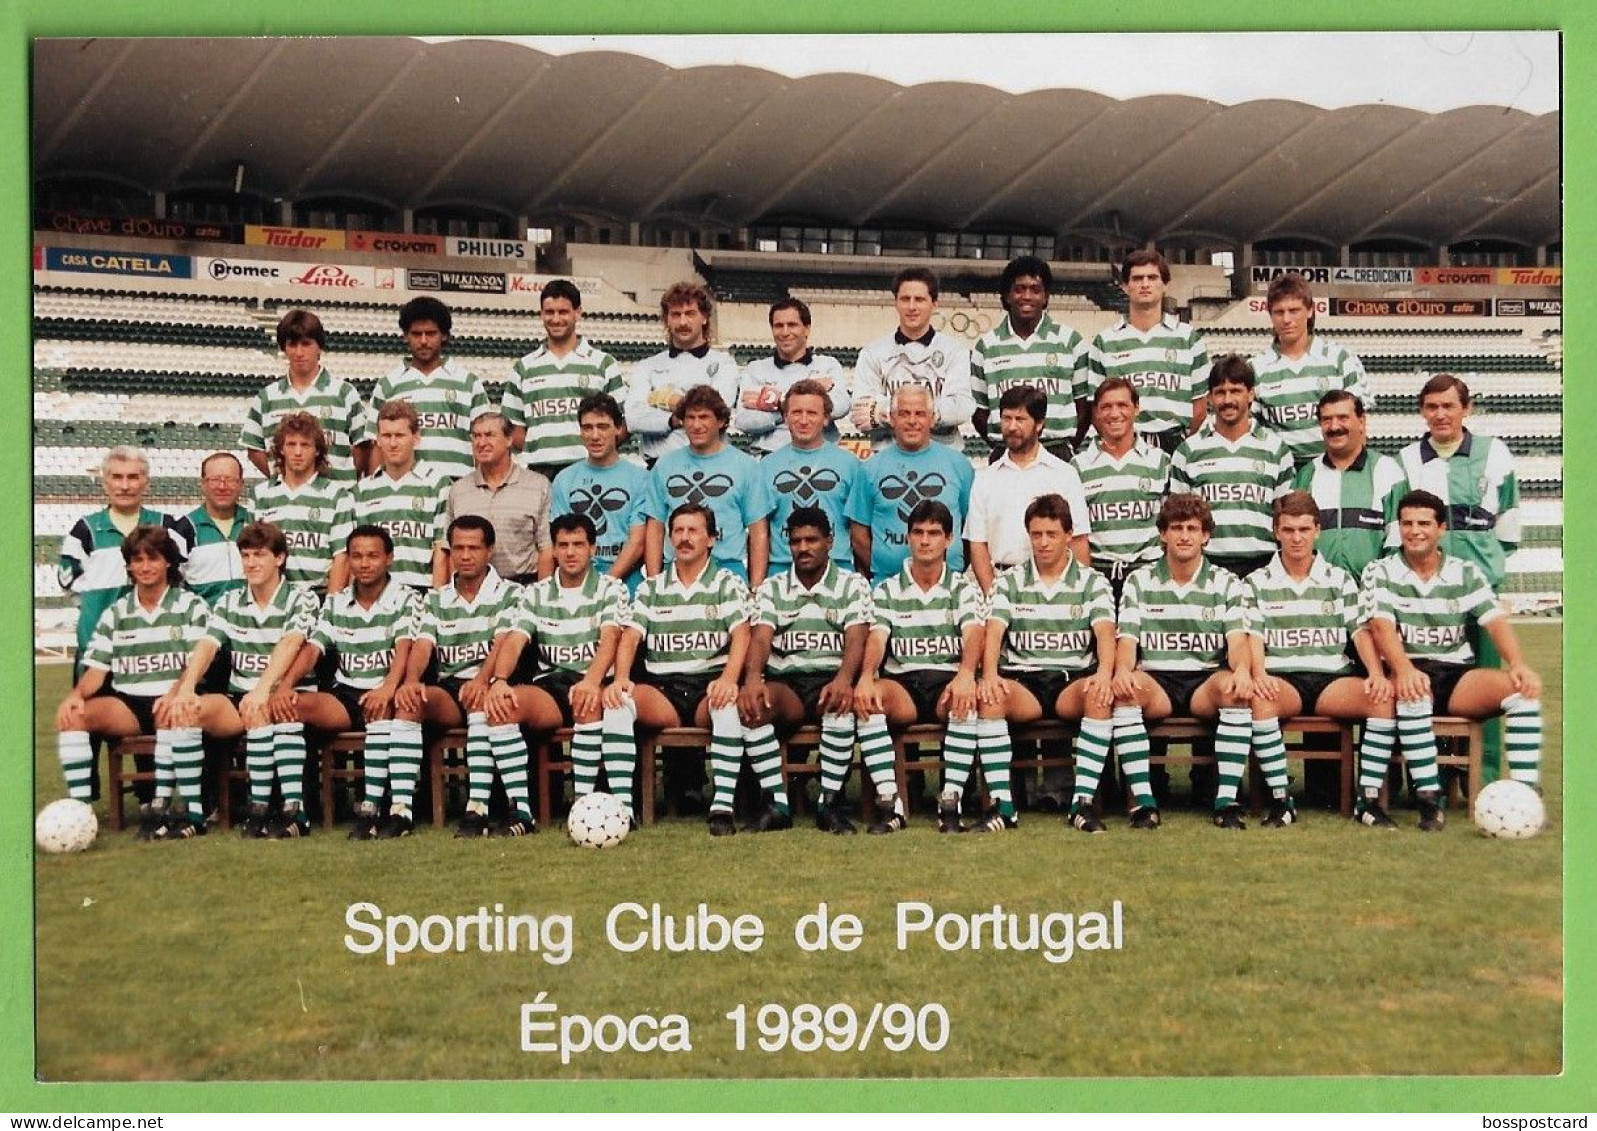 Lisboa - REAL PHOTO - Equipa De Futebol Do Sporting Clube De Portugal - Estádio - Football - Stadium - Portugal - Fussball